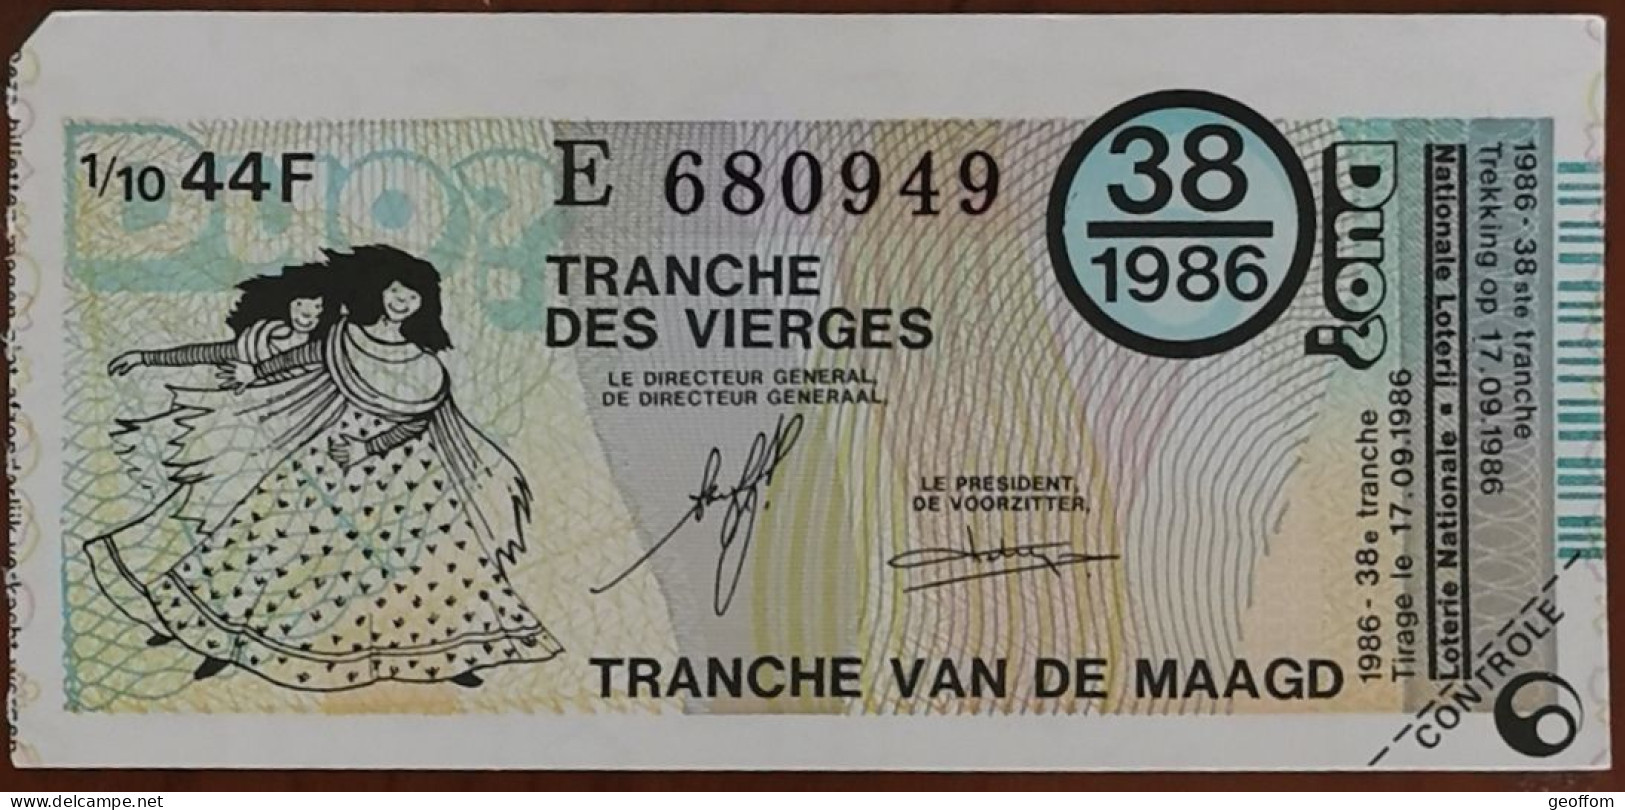 Billet De Loterie Nationale Belgique 1986 38e Tranche Des Vierges - 17-9-1986 - Biglietti Della Lotteria